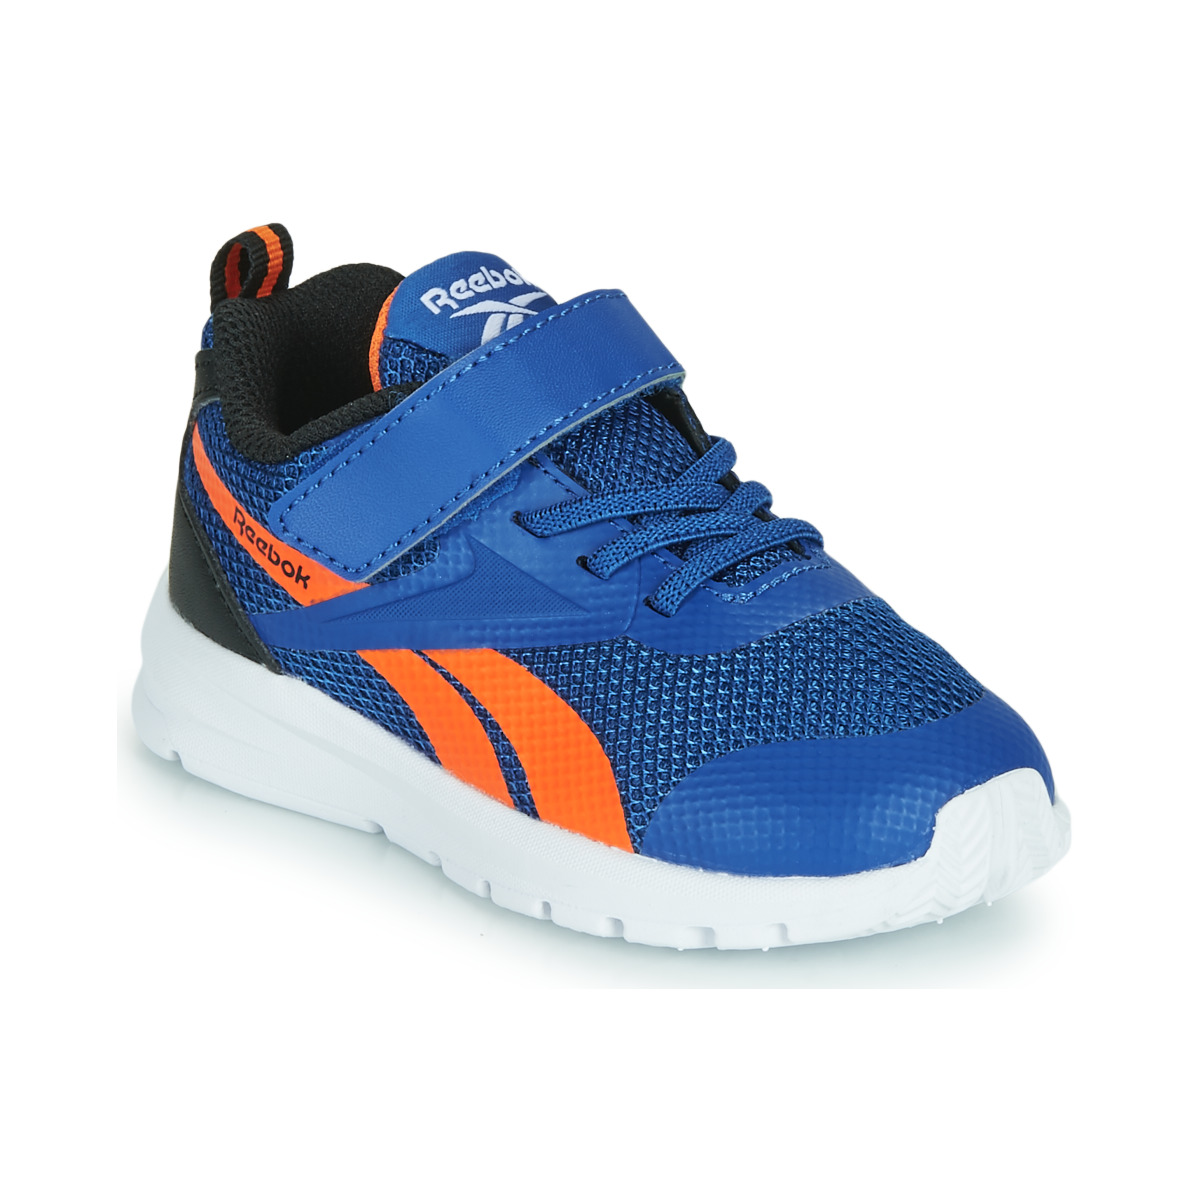 Schoenen Jongens Lage sneakers Reebok Sport RUSH RUNNER Blauw / Orange / Zwart